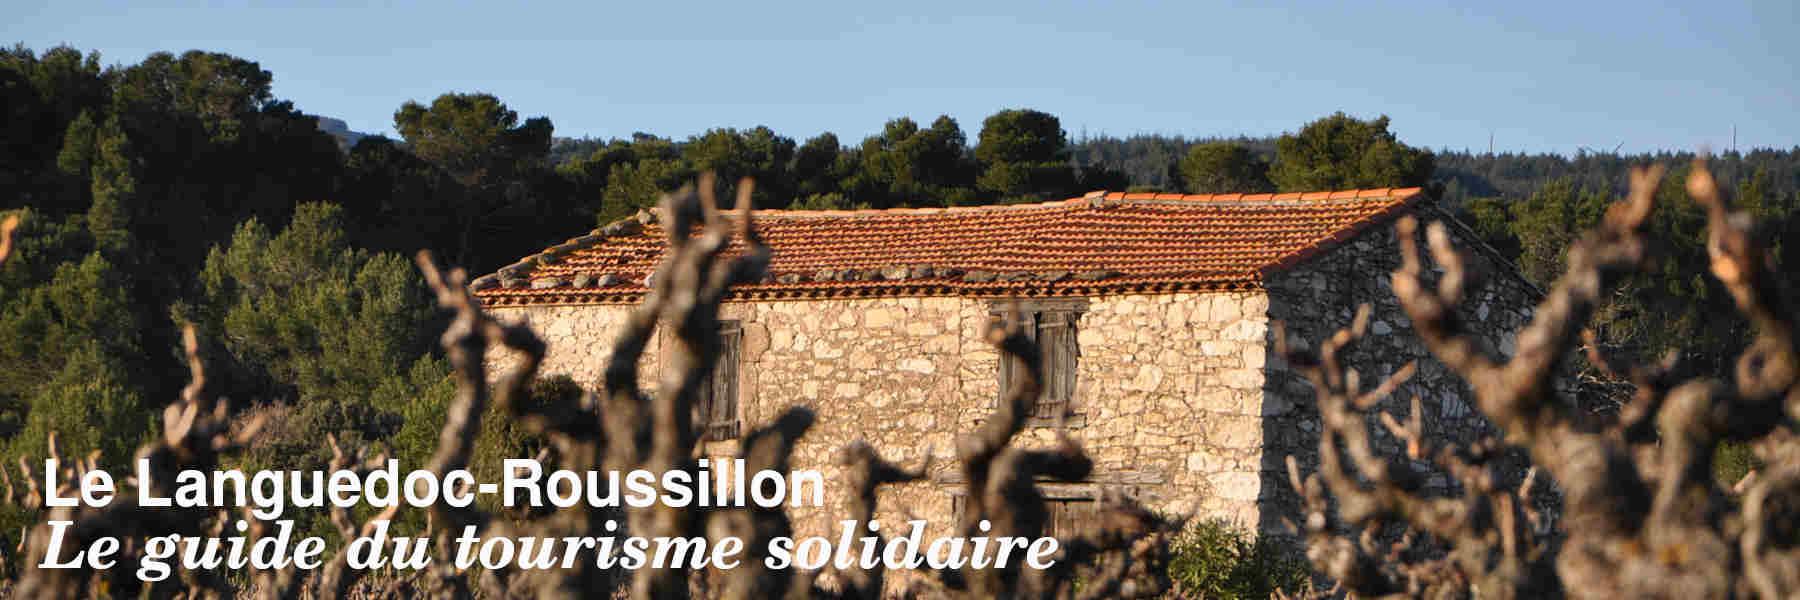 Le guide du tourisme solidaire en Languedoc-Roussillon